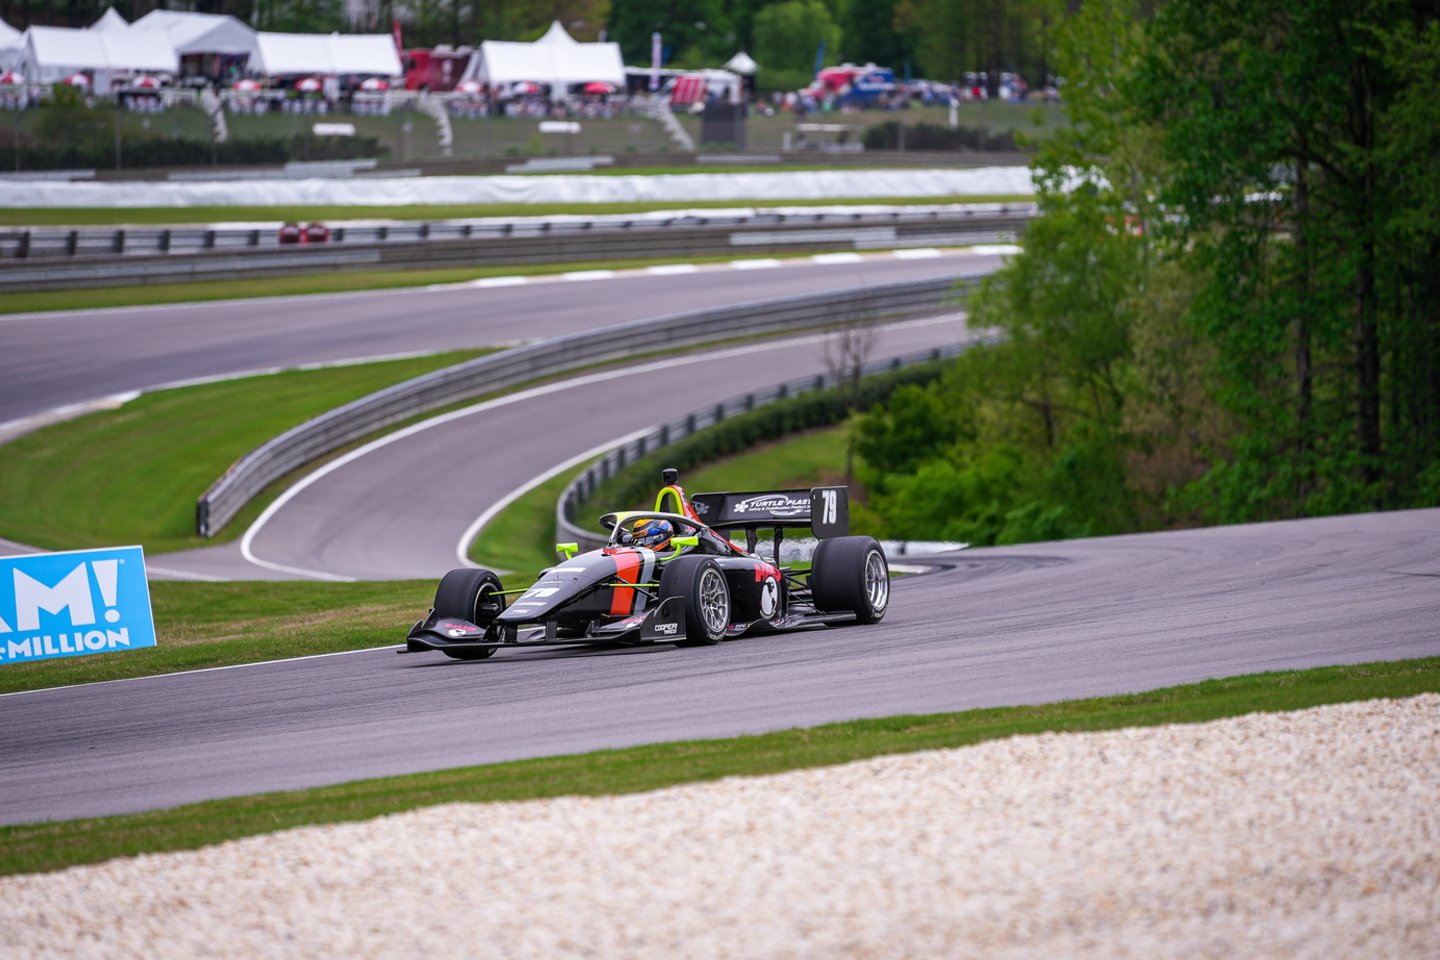 D.Malūkas sėkmingai pradėjo „Indy Lights“ sezoną ir artėja prie svajonės lenktyniauti „Indy Car“ varžybose.<br> Nuotr. iš asmeninio albumo.